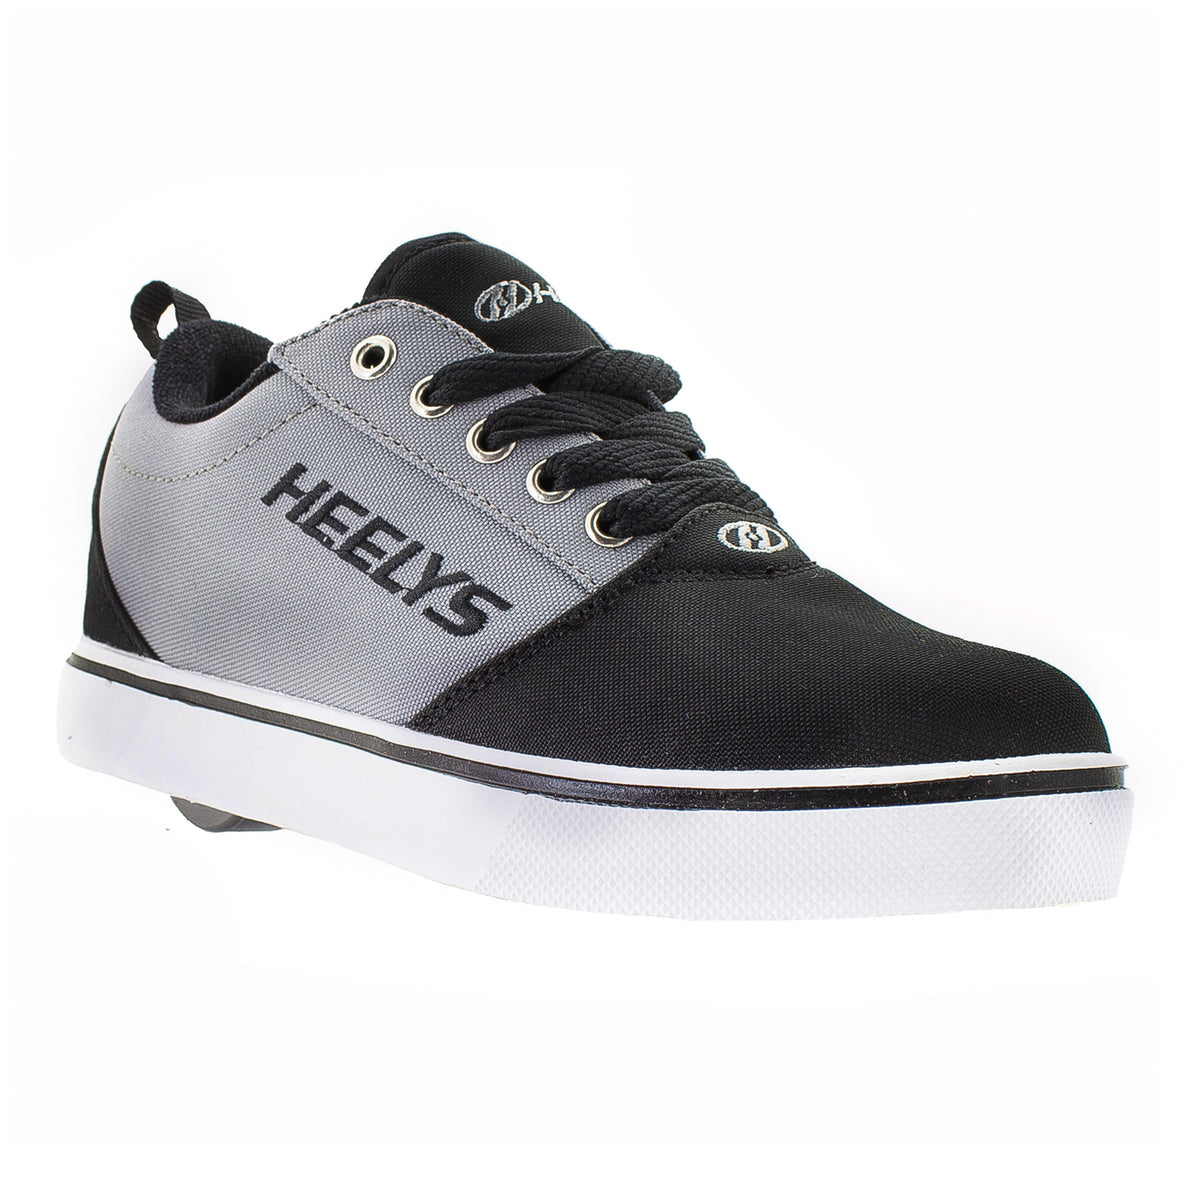 HEELYS Unisex Kids' Pro 20 Wheeled Shoe Black/Grey - HE100761H BLACK/ GREY - BLACK/ GREY, 6 Big Kid